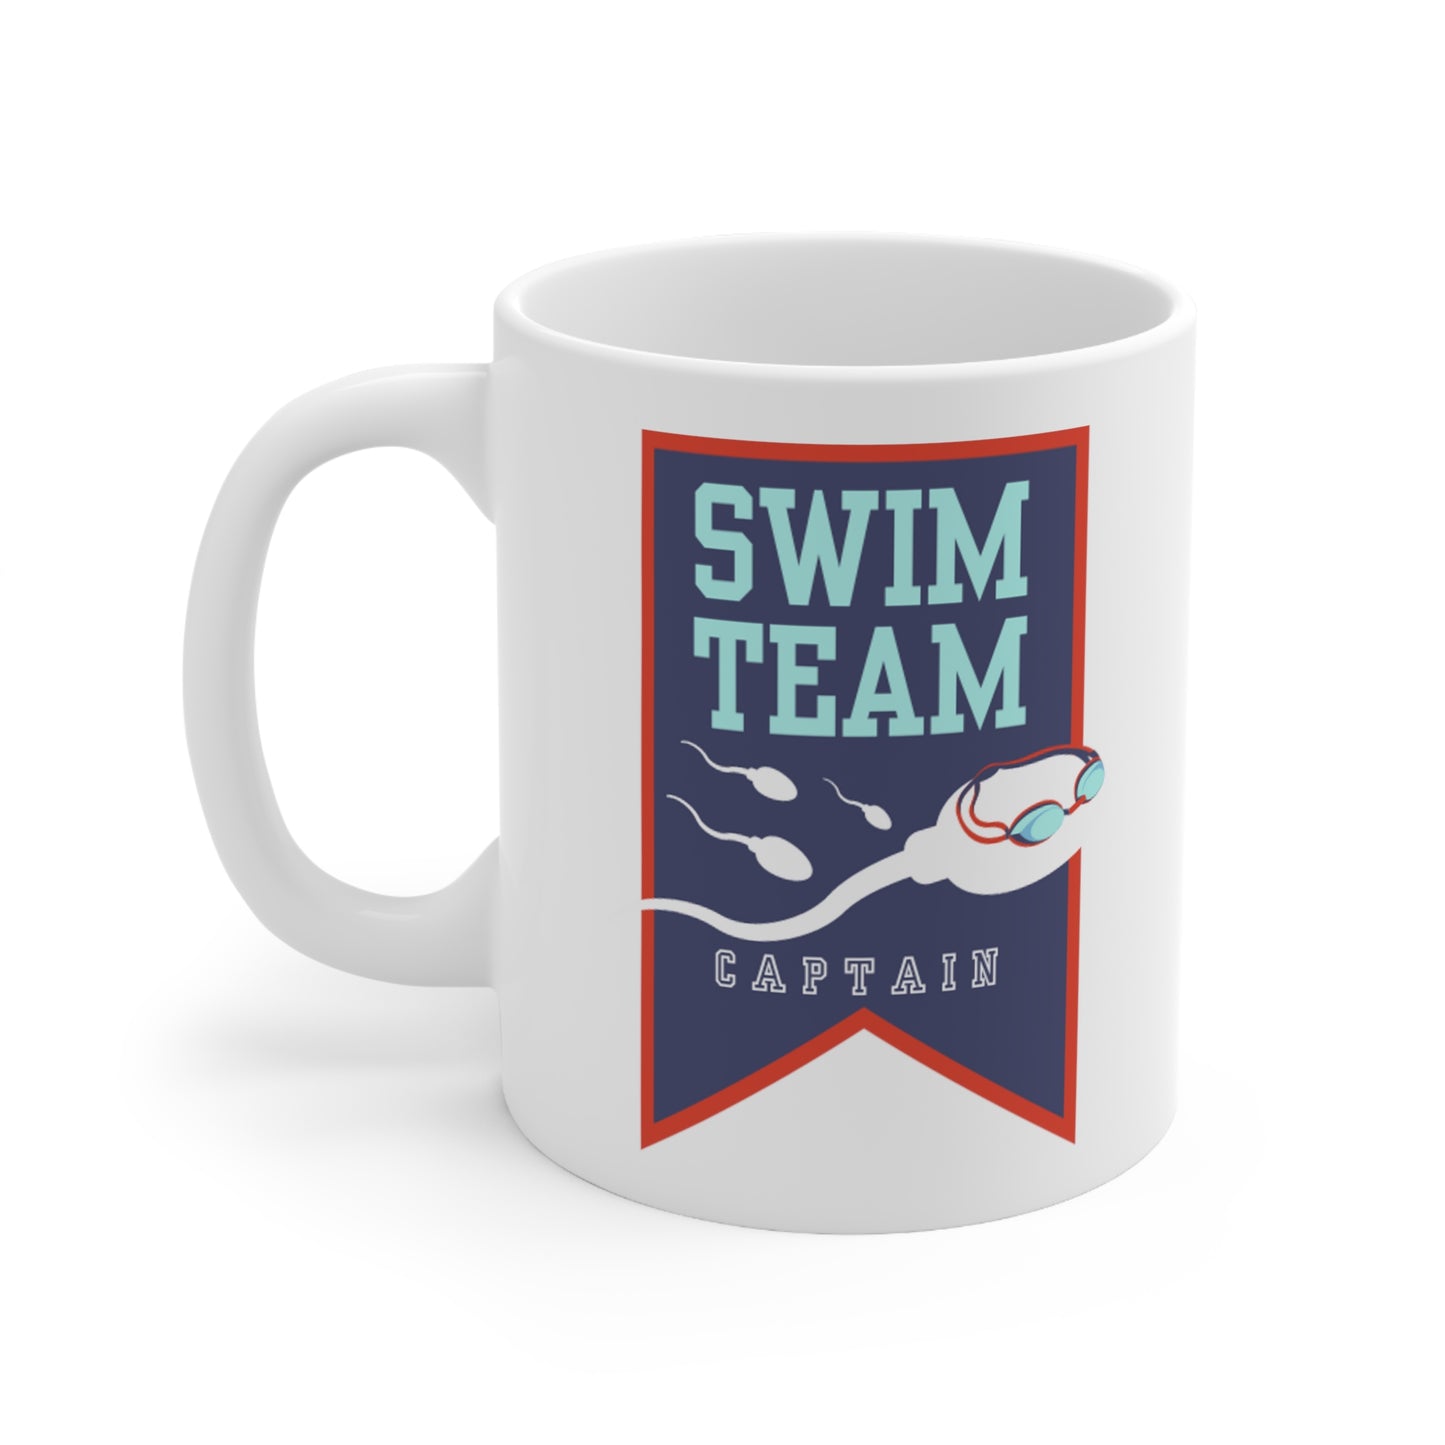 Swim Team Captain white glossy mug modeled handle left